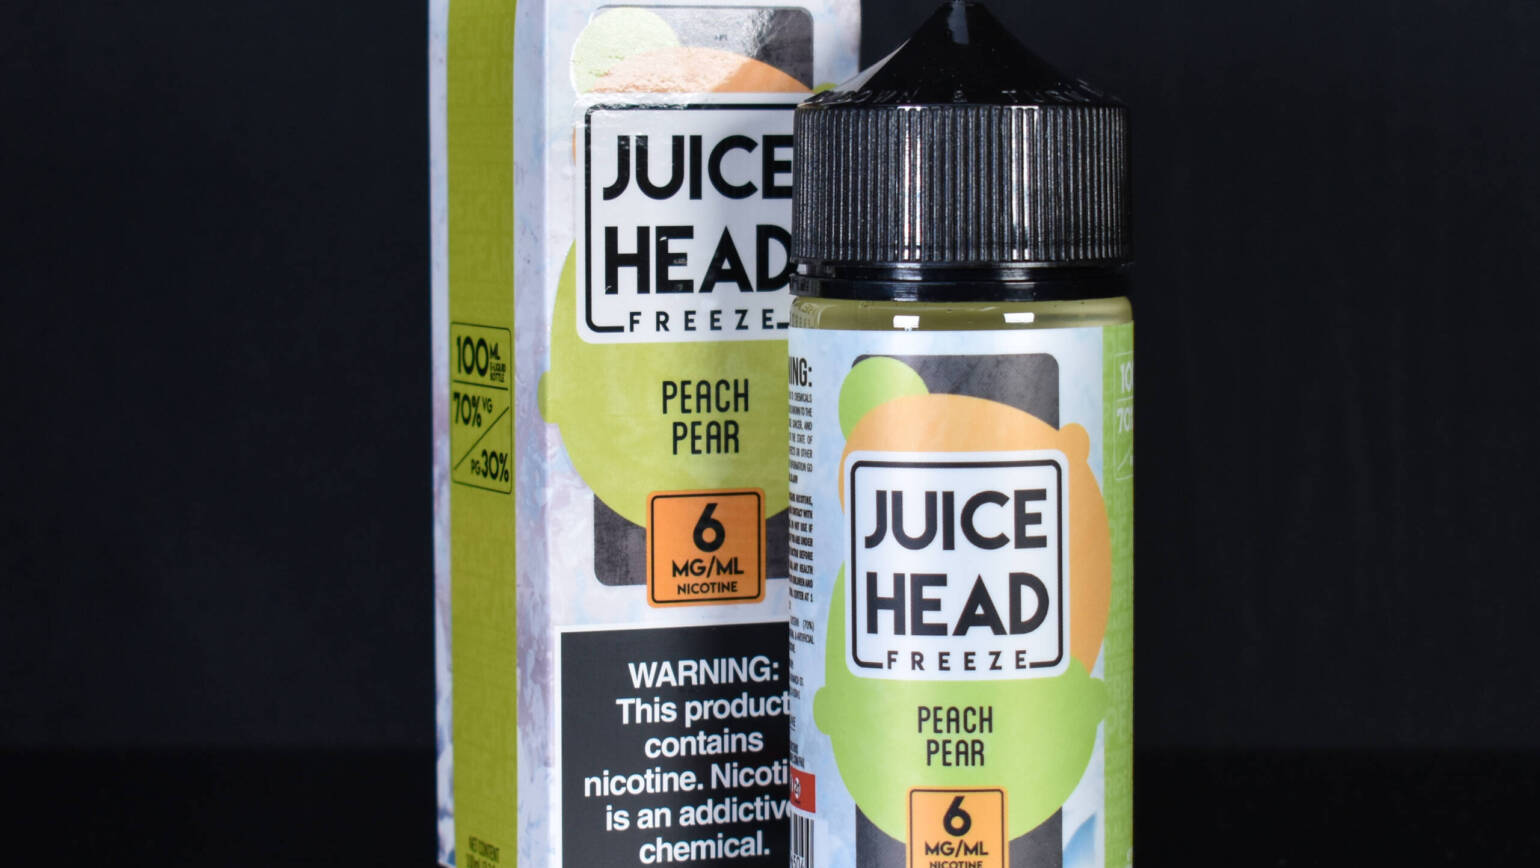 Juice Head – Peach Pear FREEZE